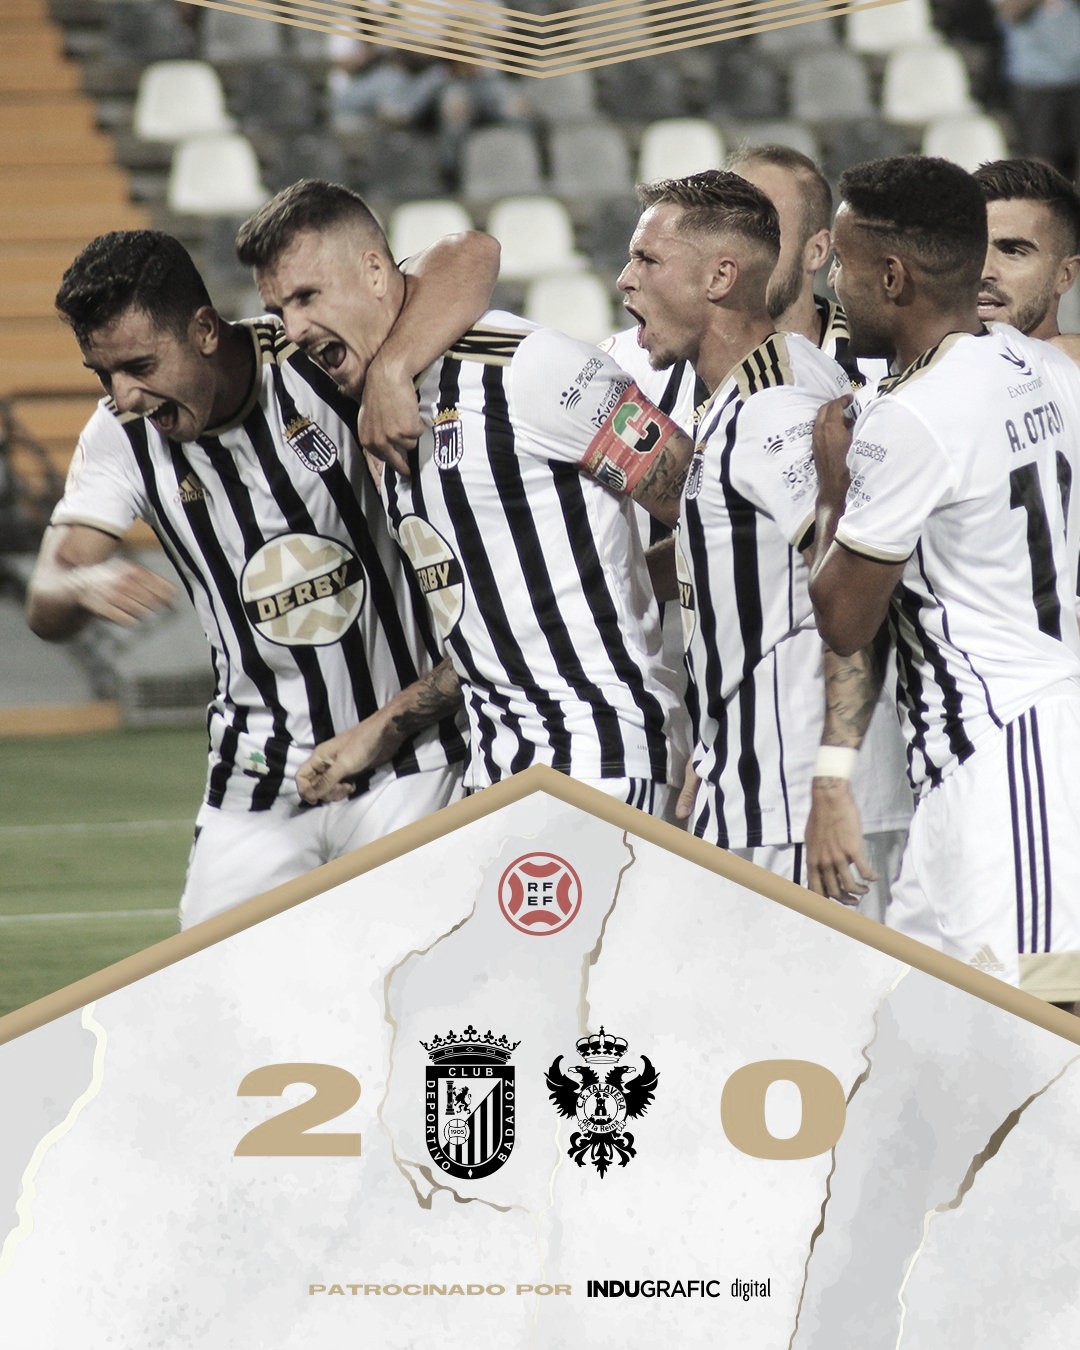 El CD Badajoz se alza con la victoria en su primer partido de la temporada